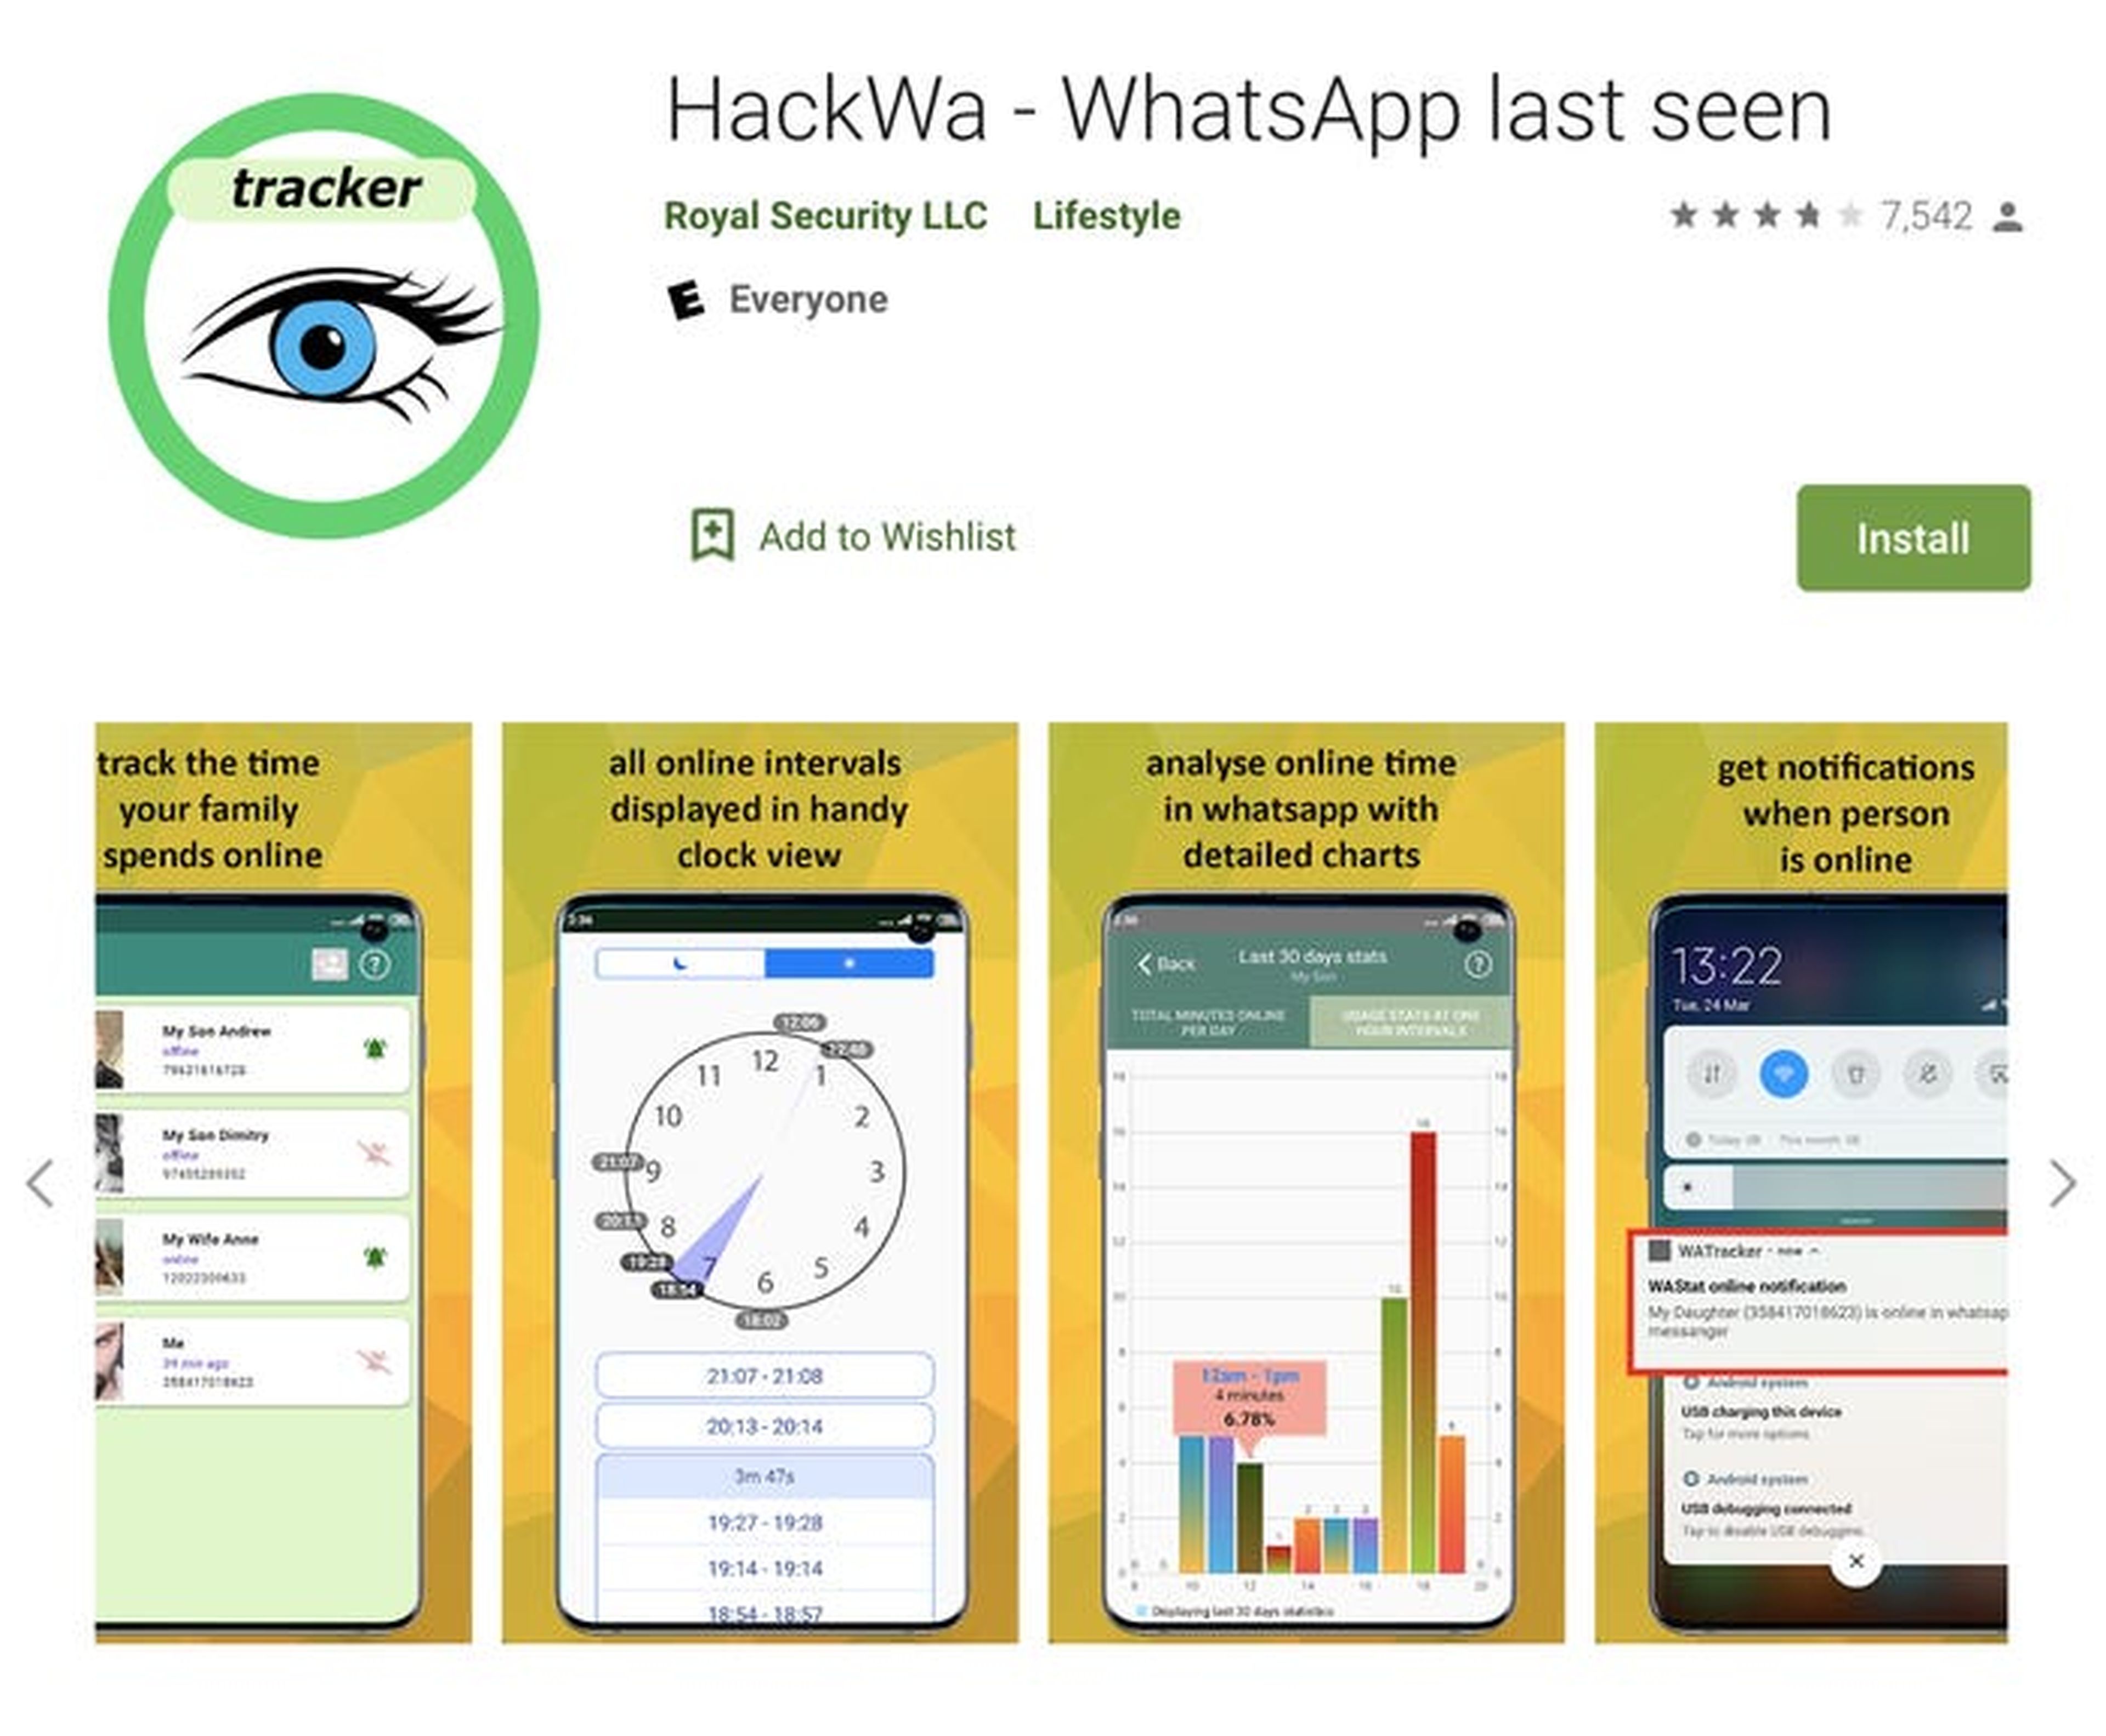 Las aplicaciones ofrecen interfaces gráficas para ver cuándo los objetivos usan WhatsApp y pueden enviar notificaciones cuando alguien está en línea.